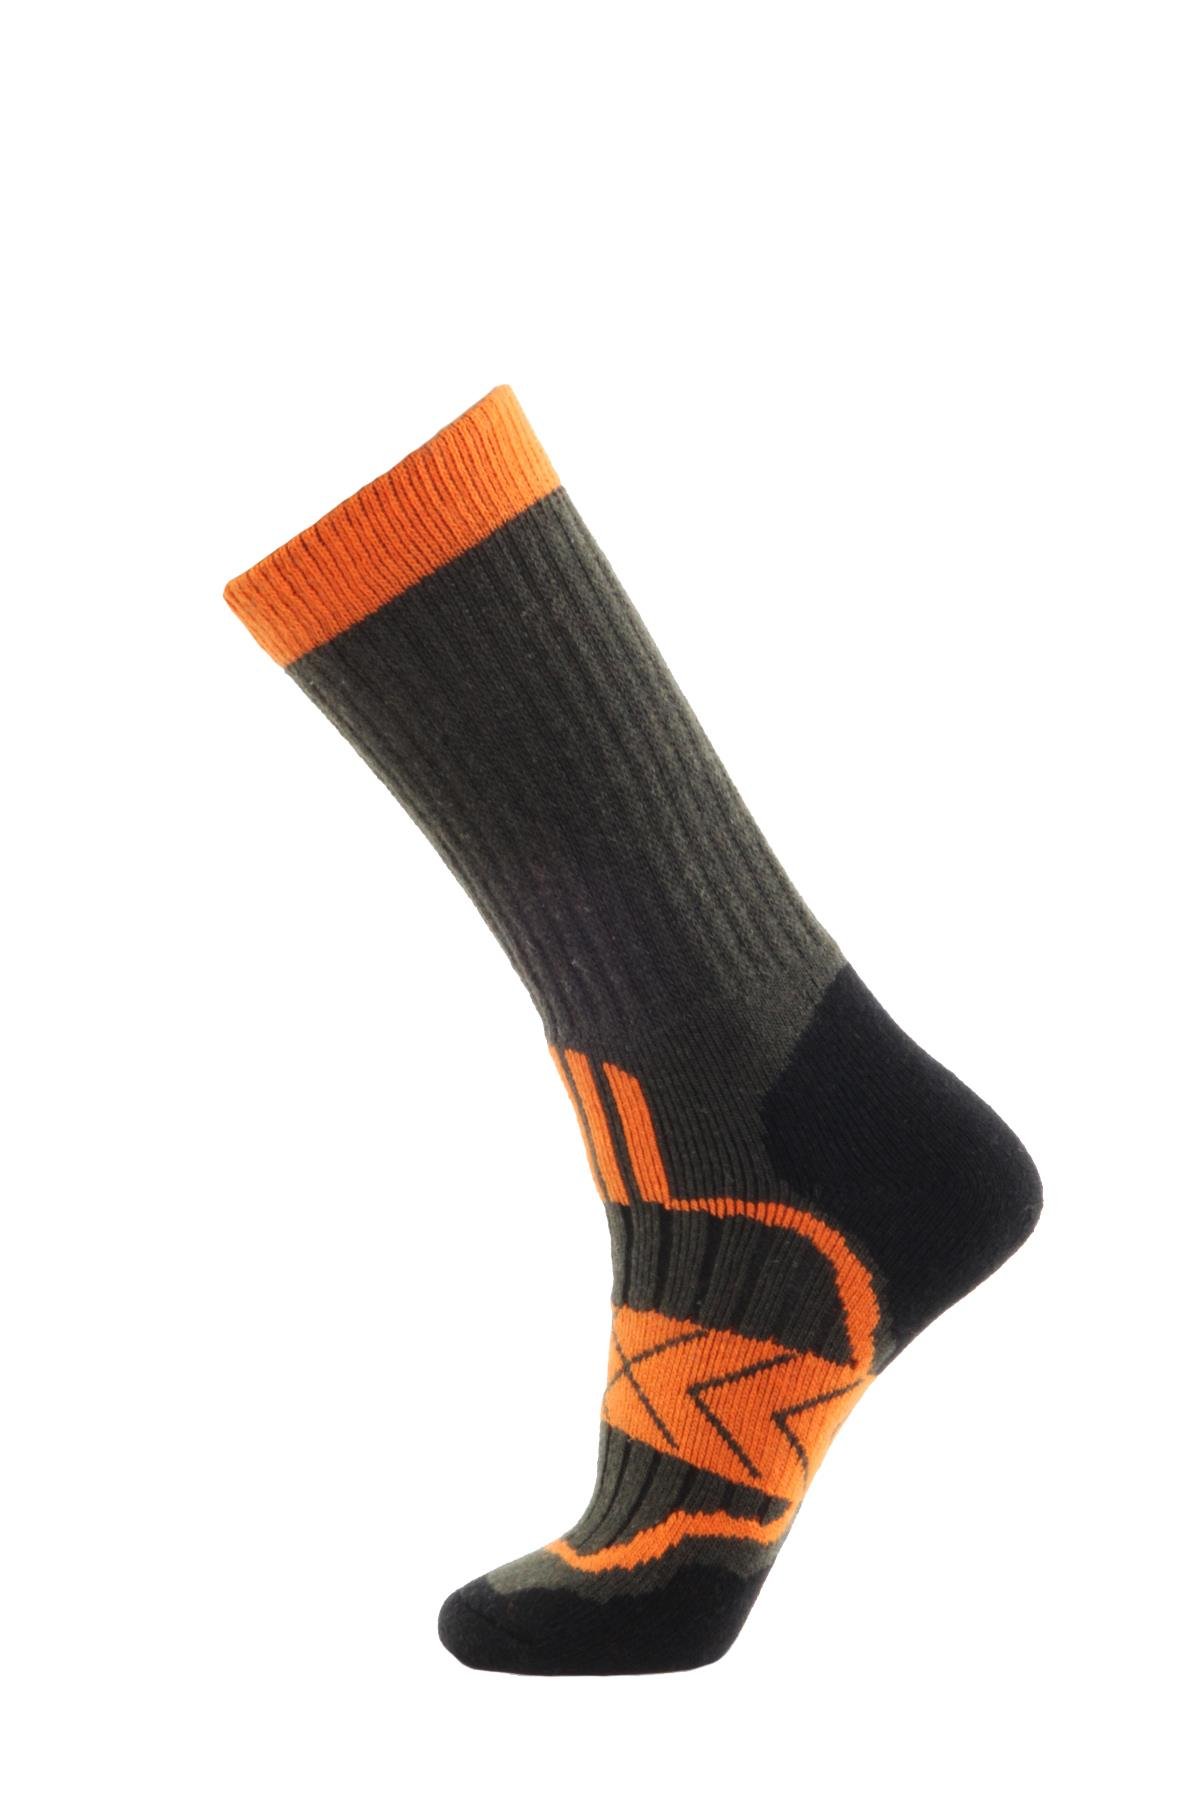 Panthzer Outdoor Socks Turuncu/Siyah